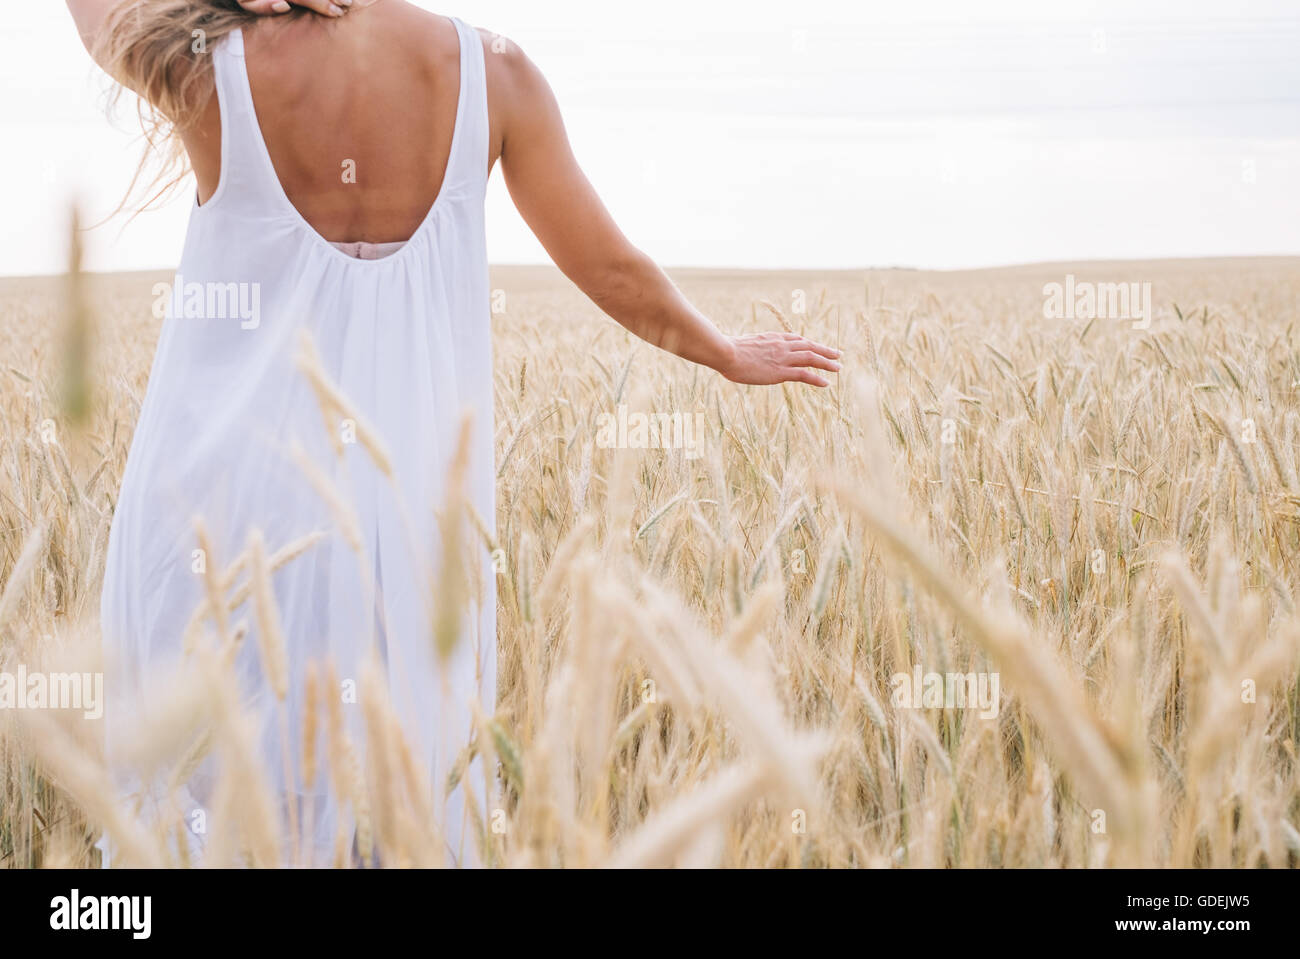 Rear view of woman walking in wheat field Stock Photo